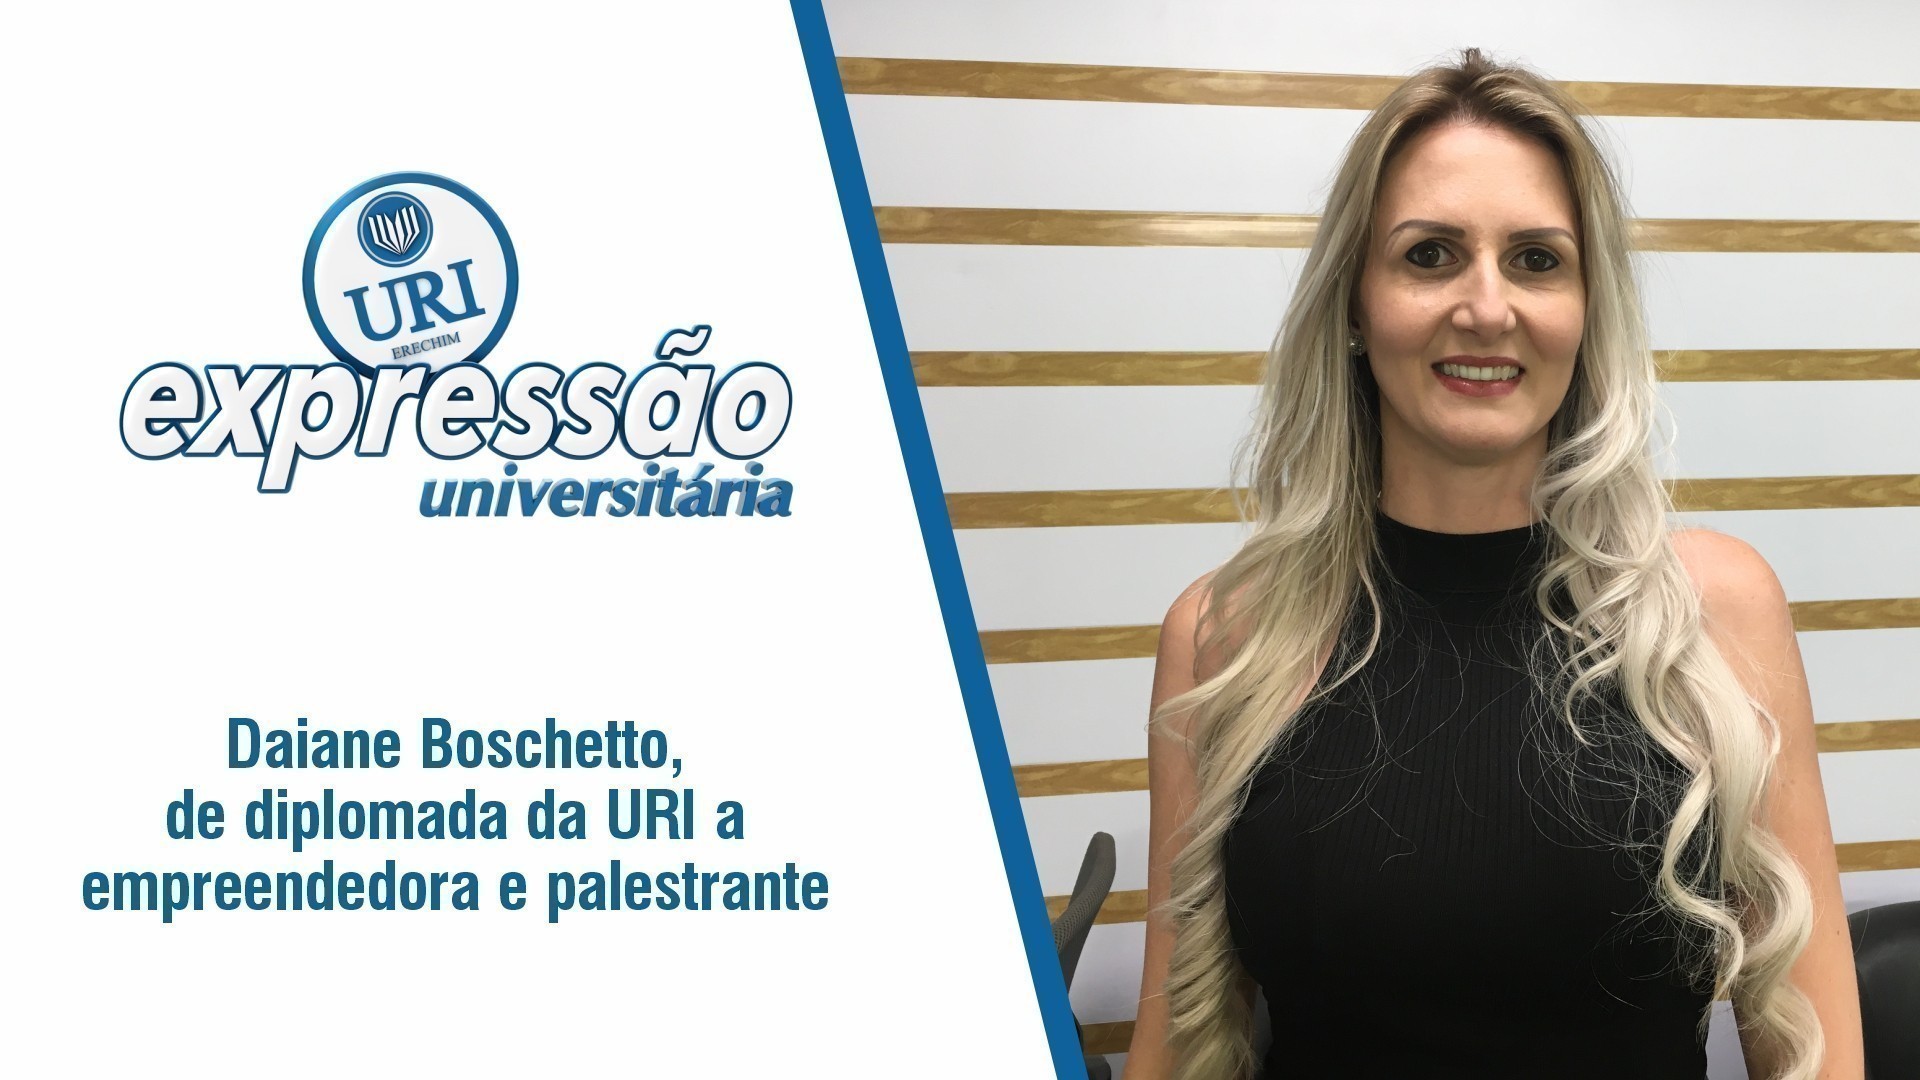 Daiane Boschetto, de diplomada da URI a empreendedora e palestrante.